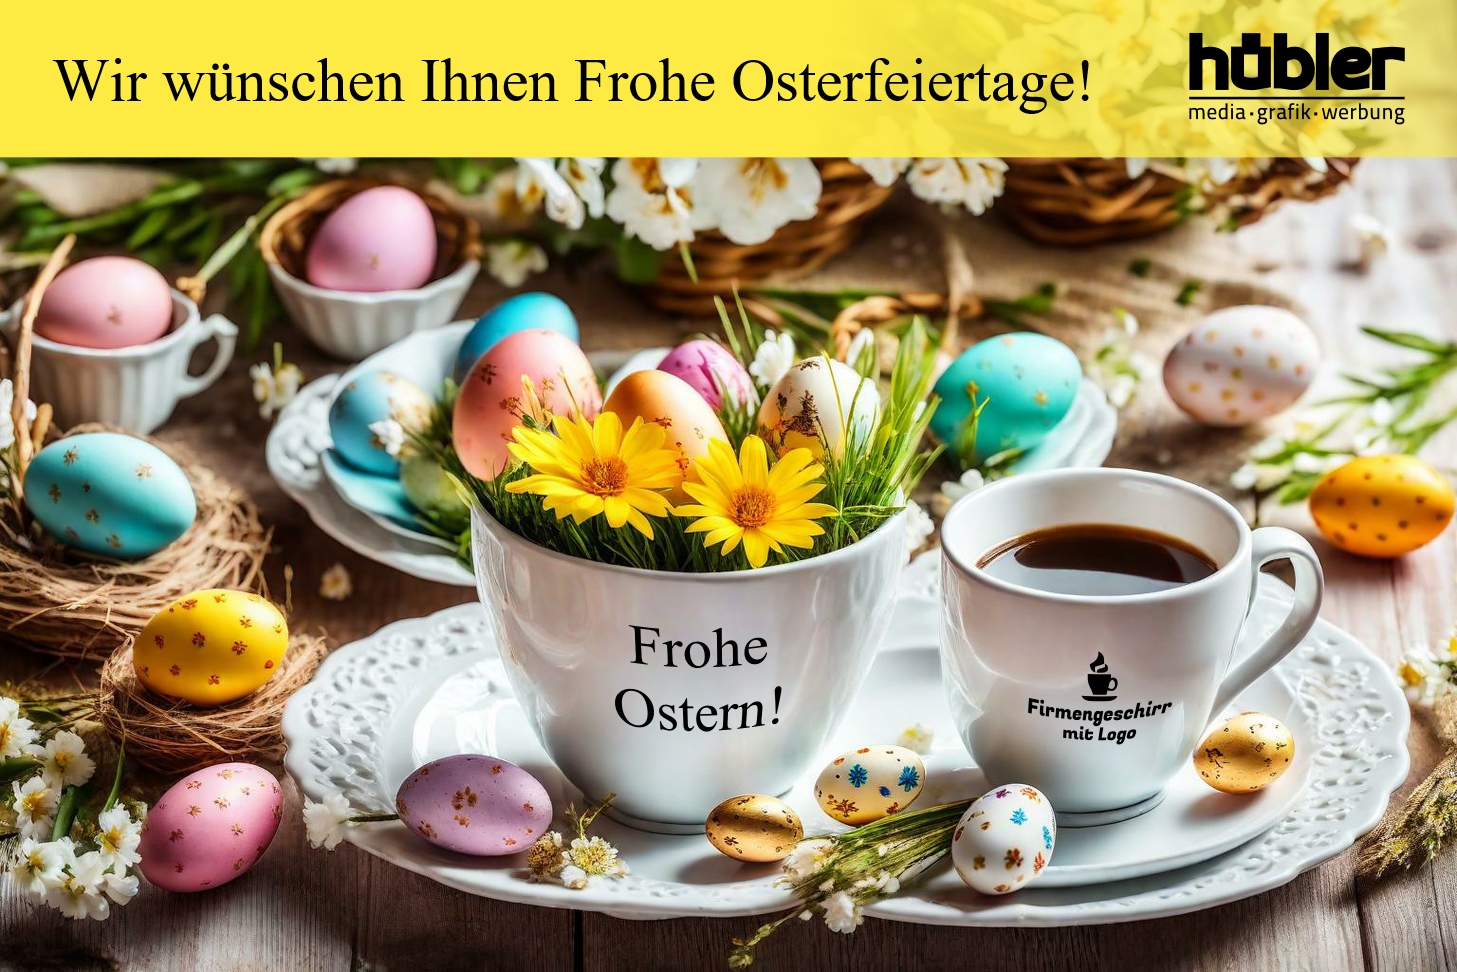 Firmengeschirr mit Logo wünscht Frohe Ostern!